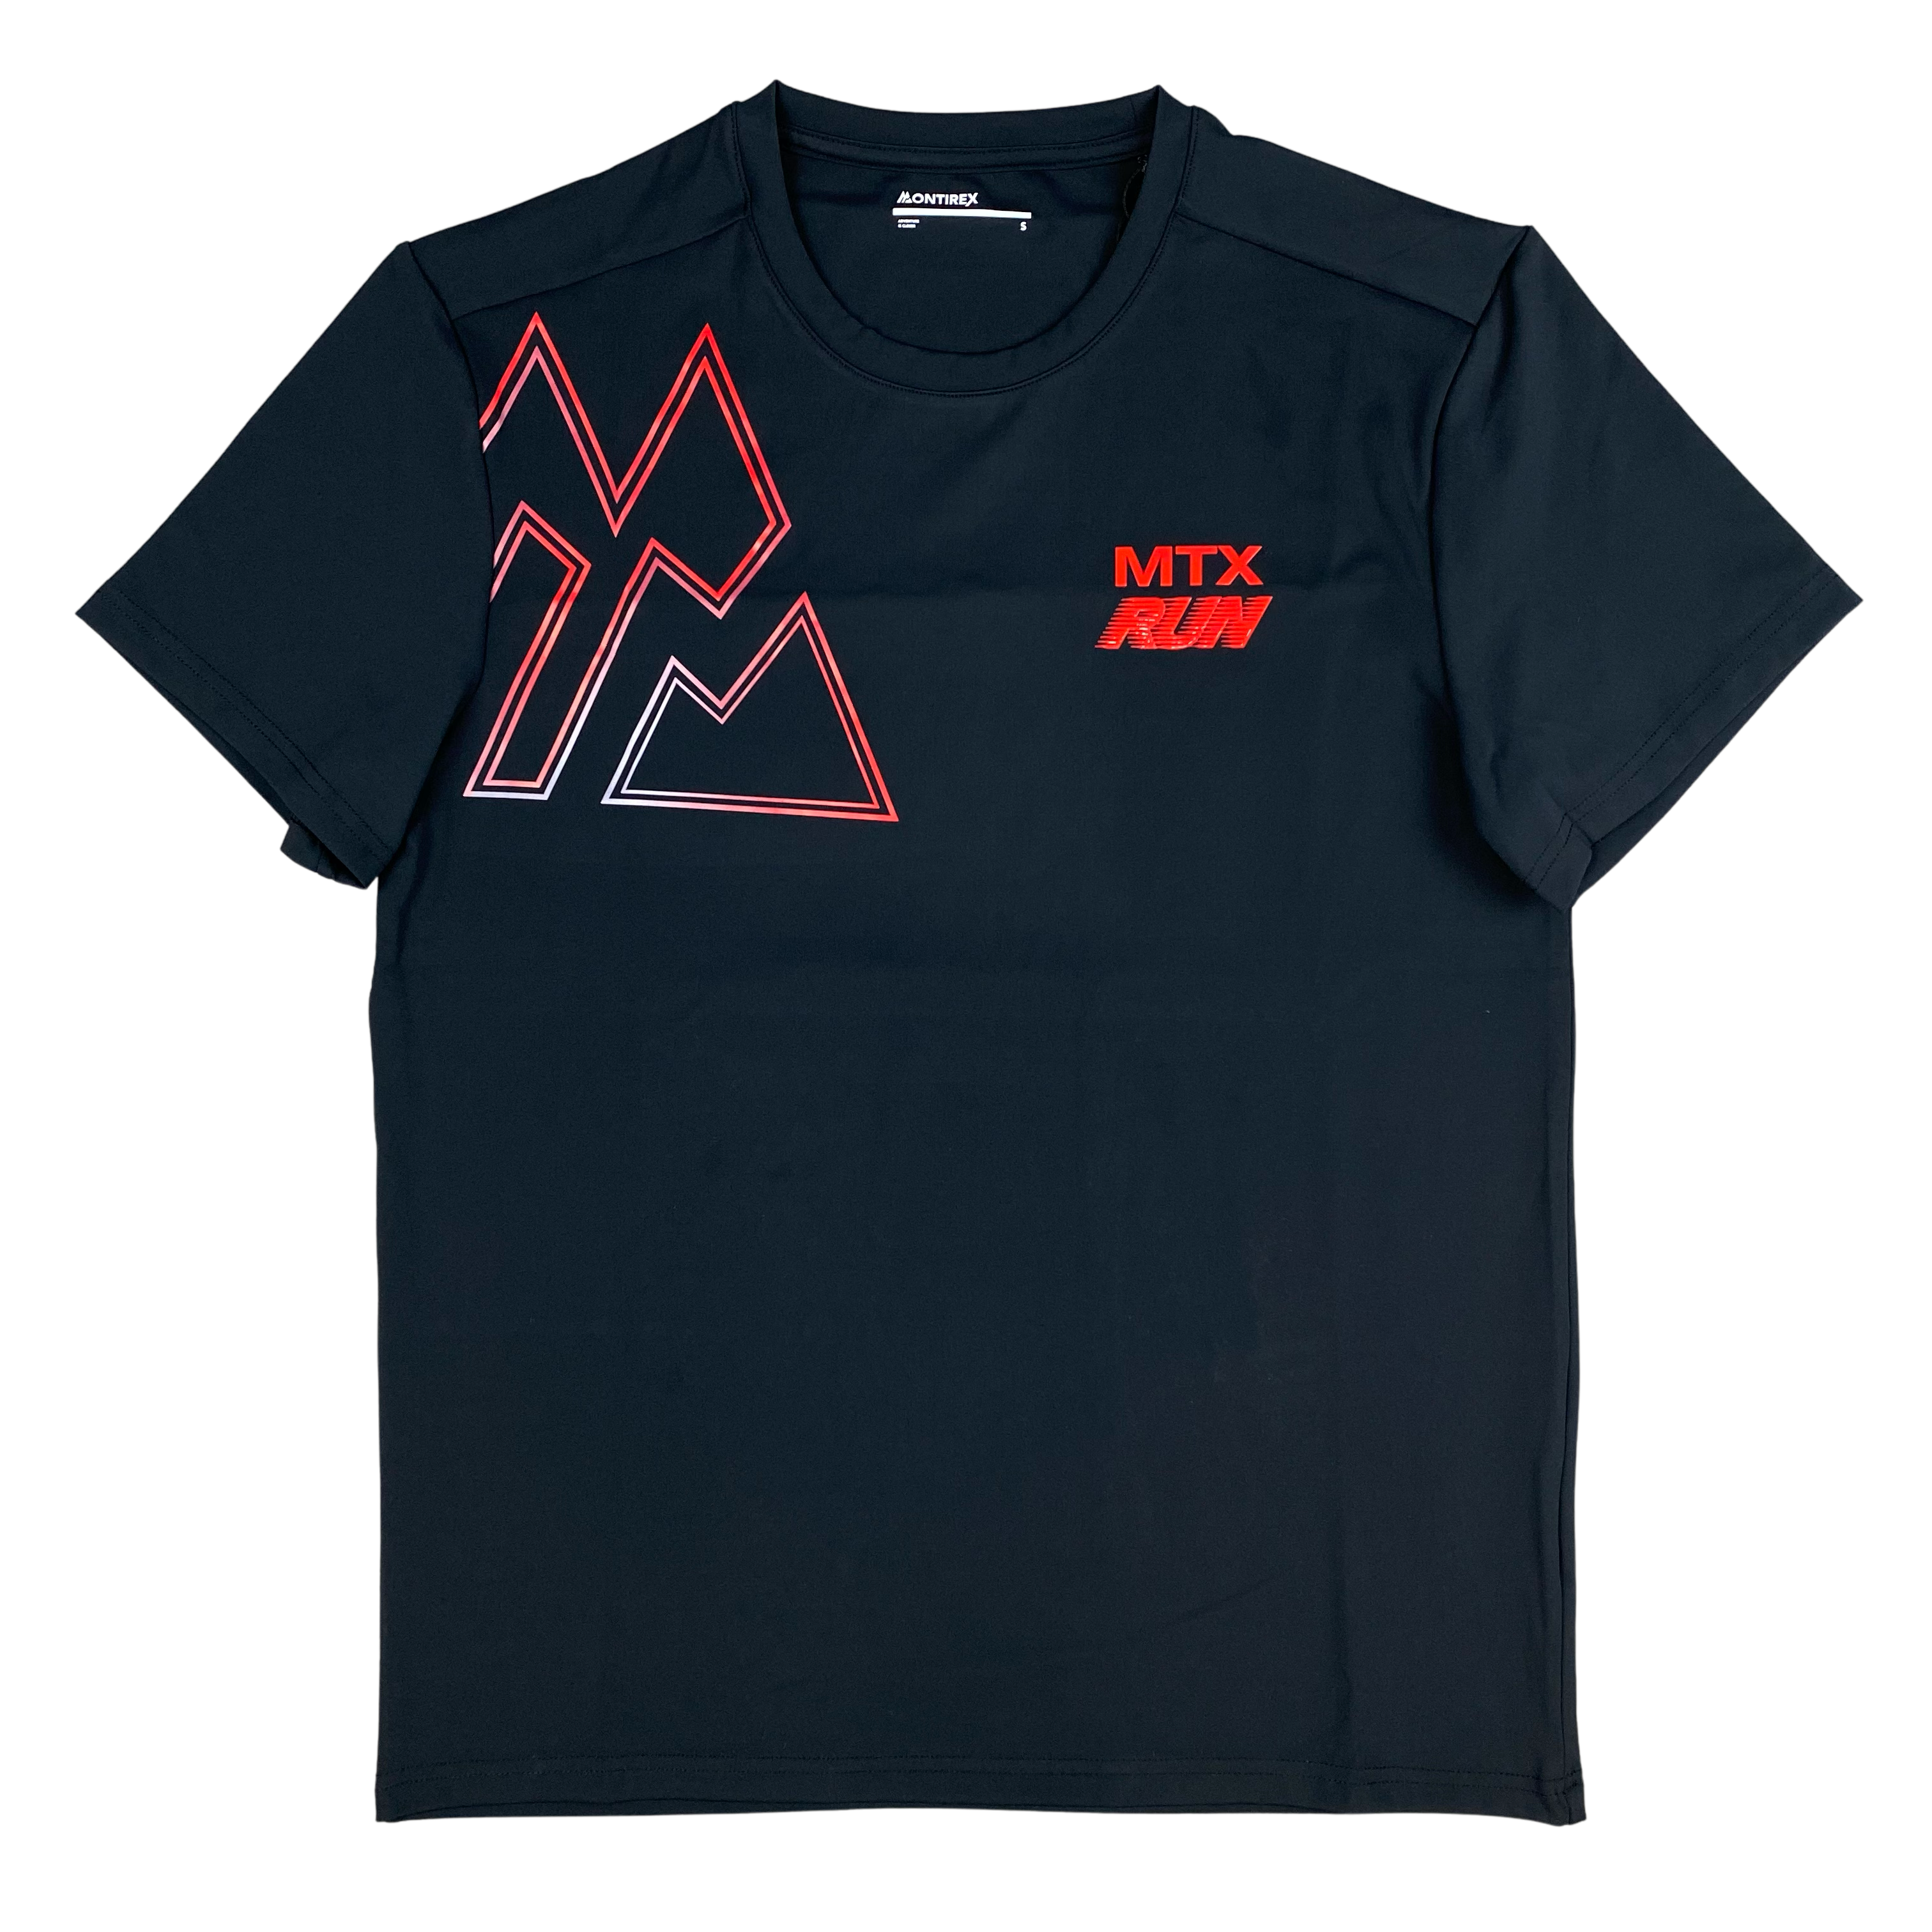 MONTIREX MTX Run Iridescent T-Shirt - Black/Cardinal Red